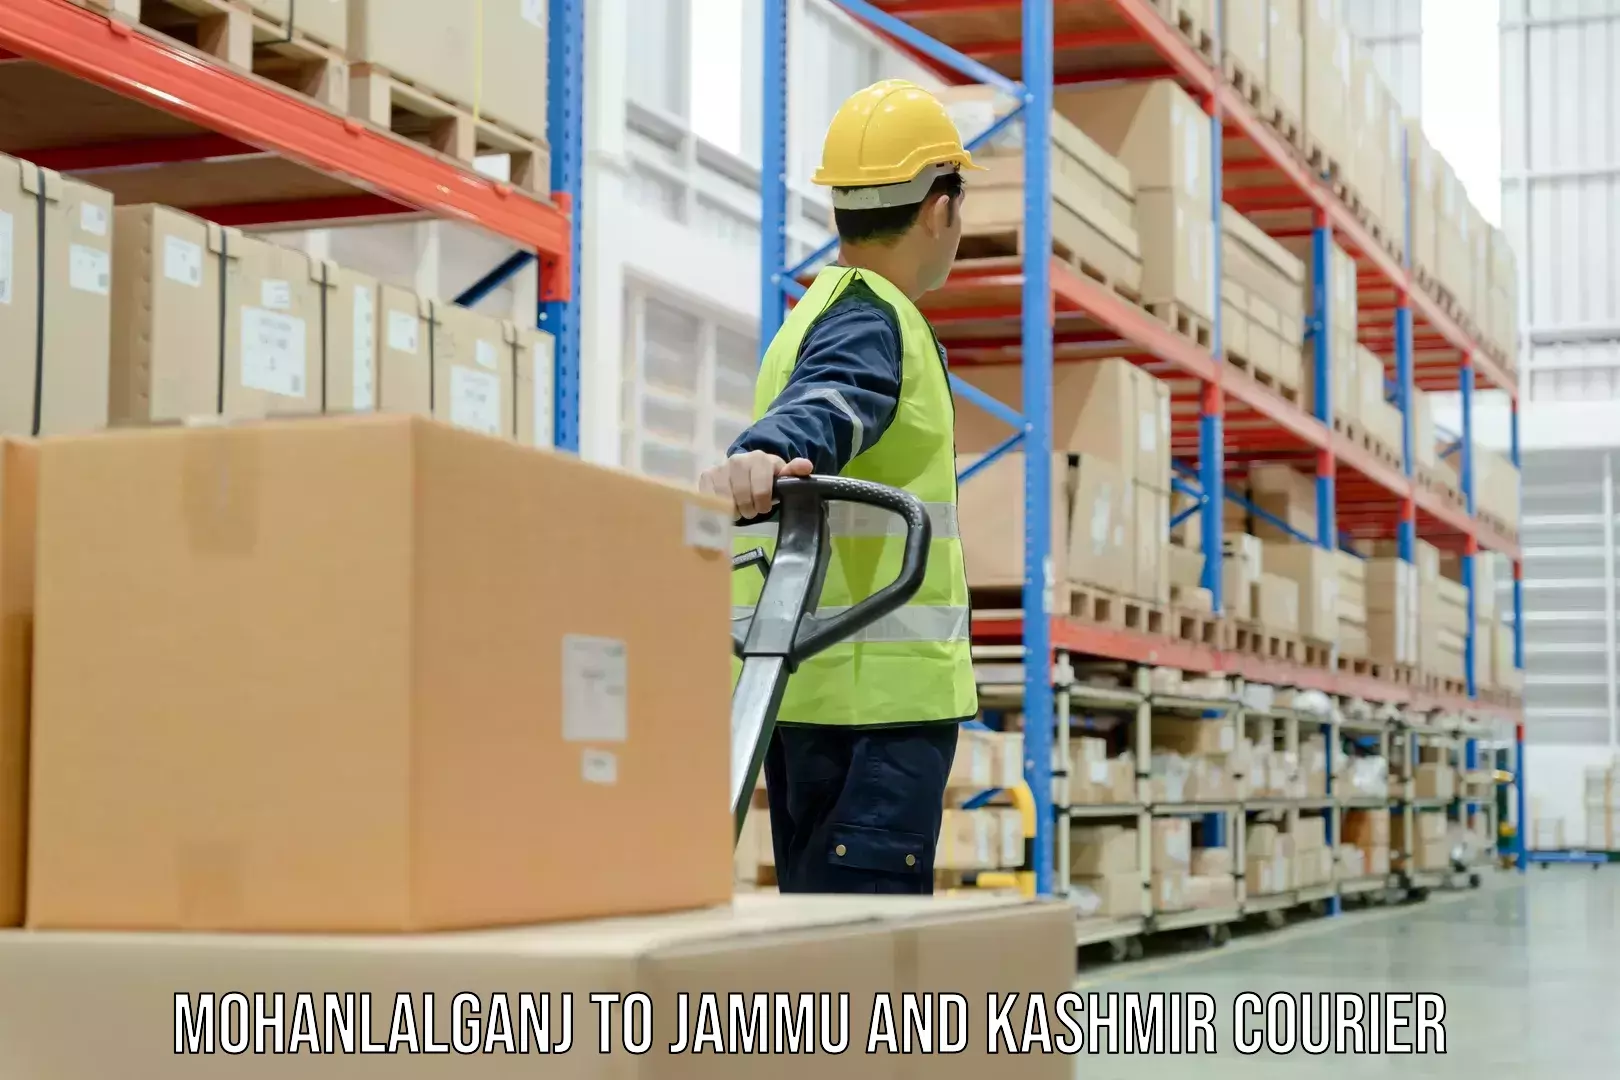 Global shipping solutions Mohanlalganj to Baramulla